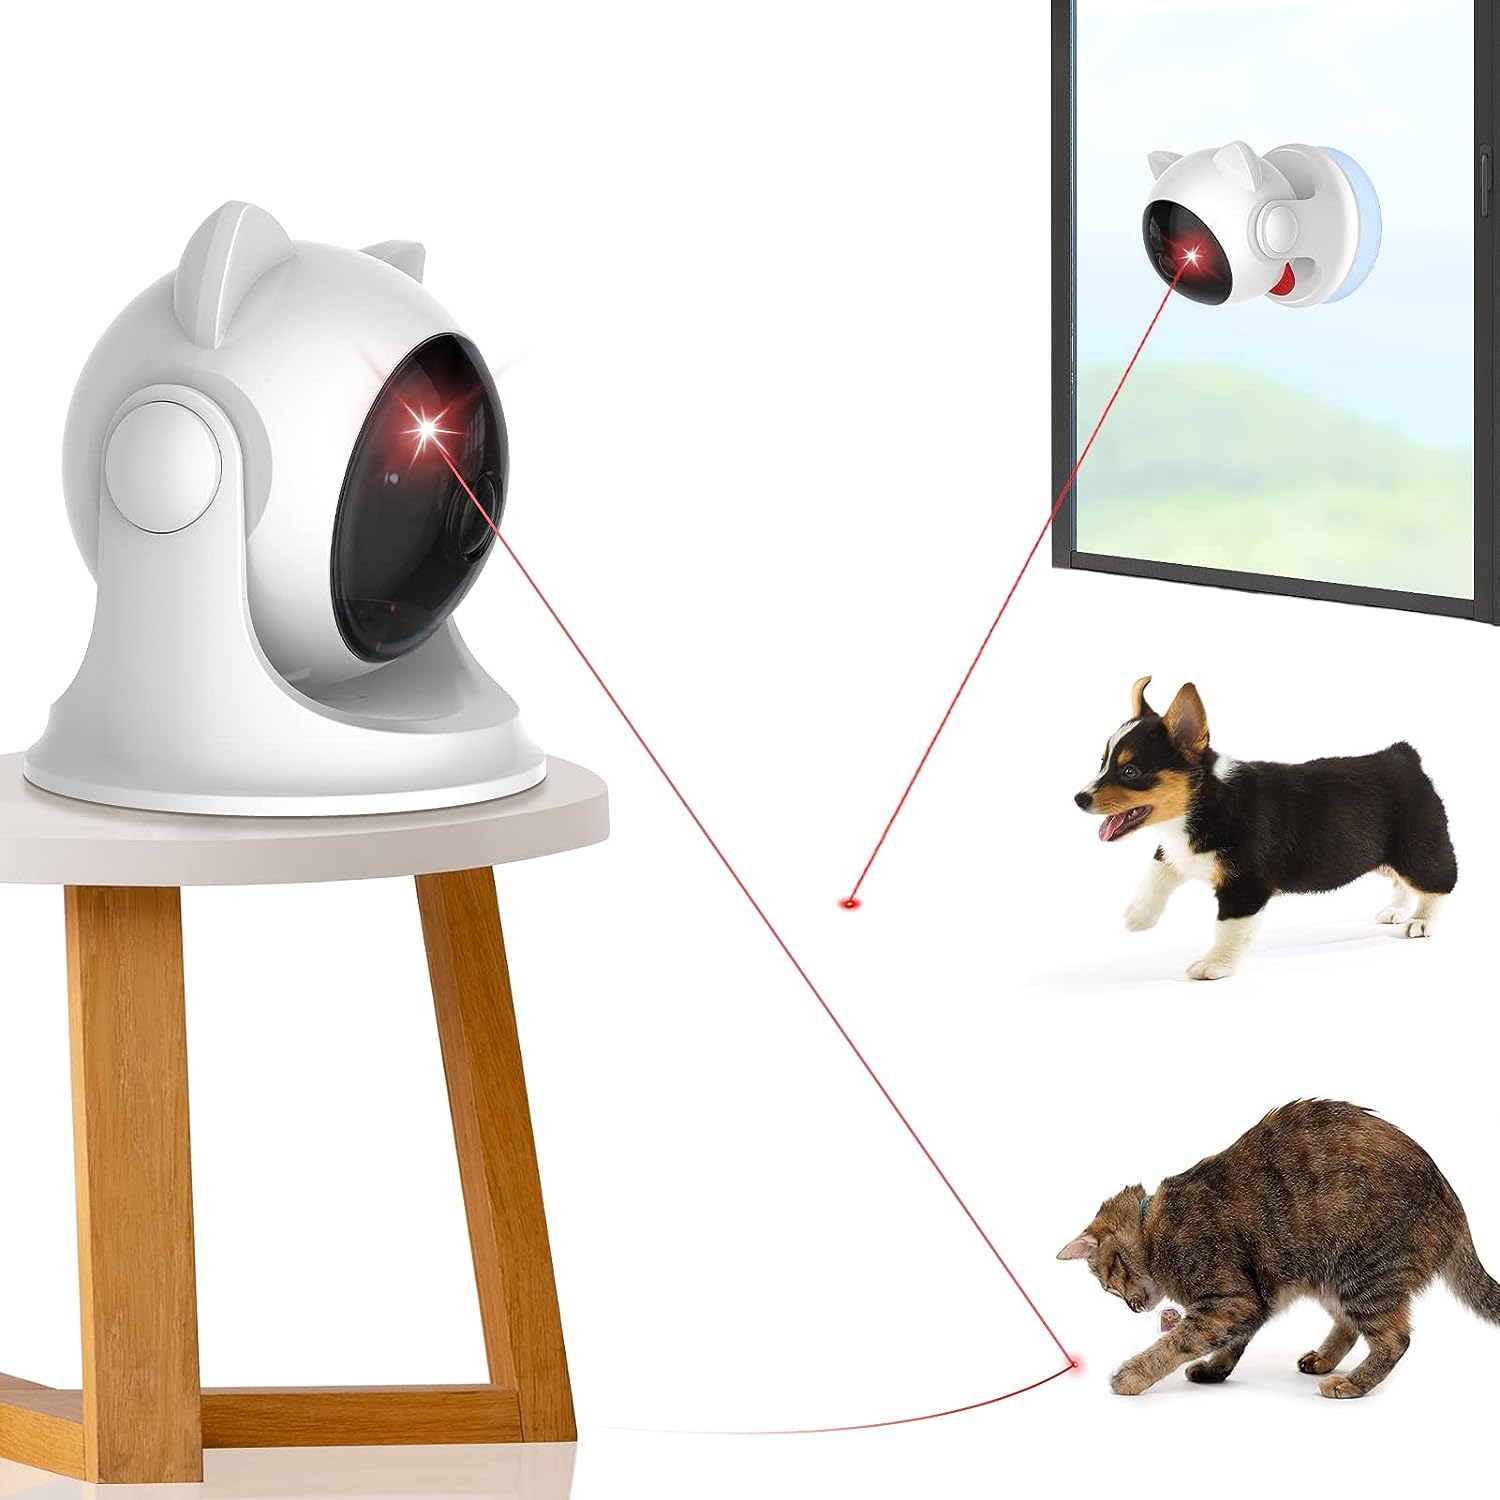 Laser interactivo juguete para gatos - MASCOTAMODA